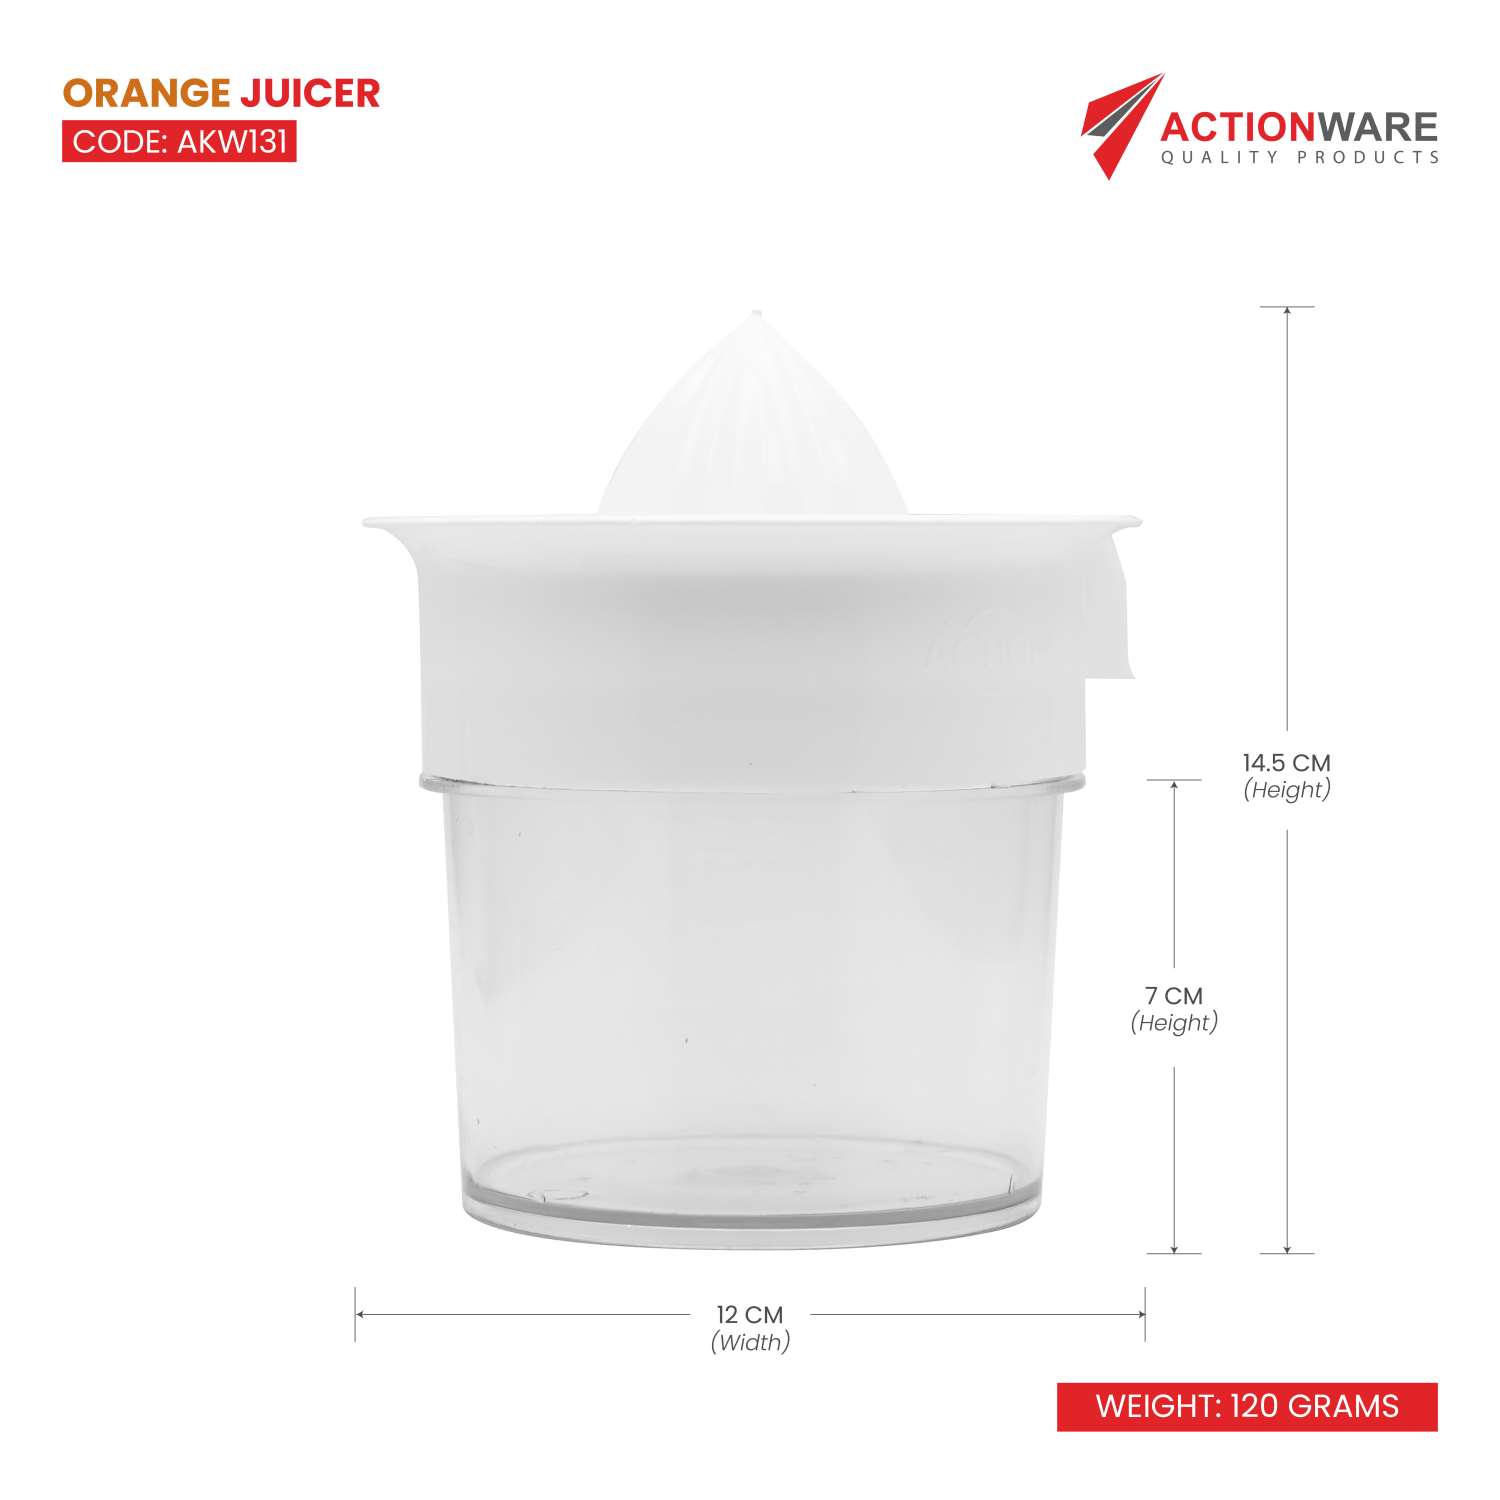 Actionware Plastic Orange Juicer White